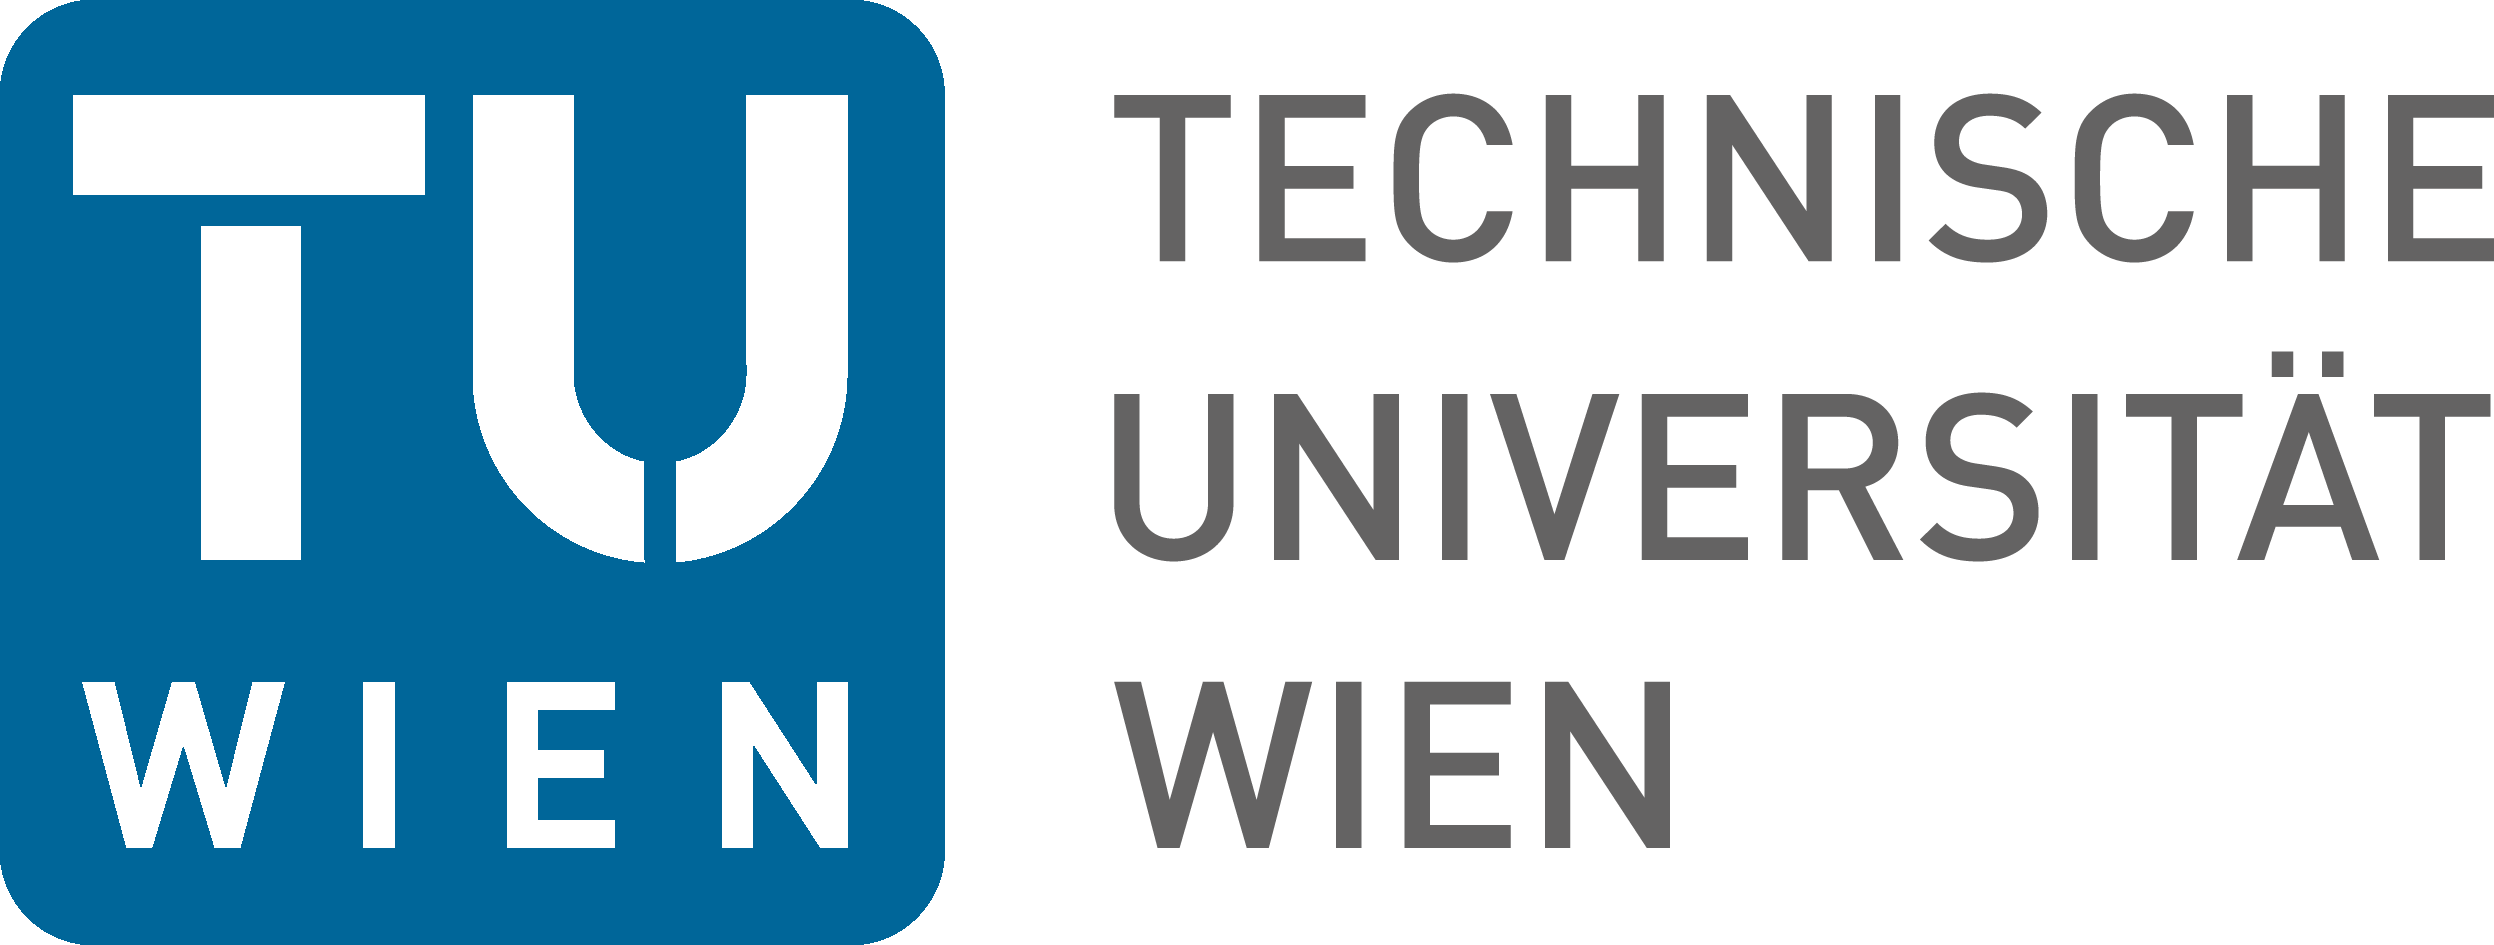 TU Wien Logo photo - 1